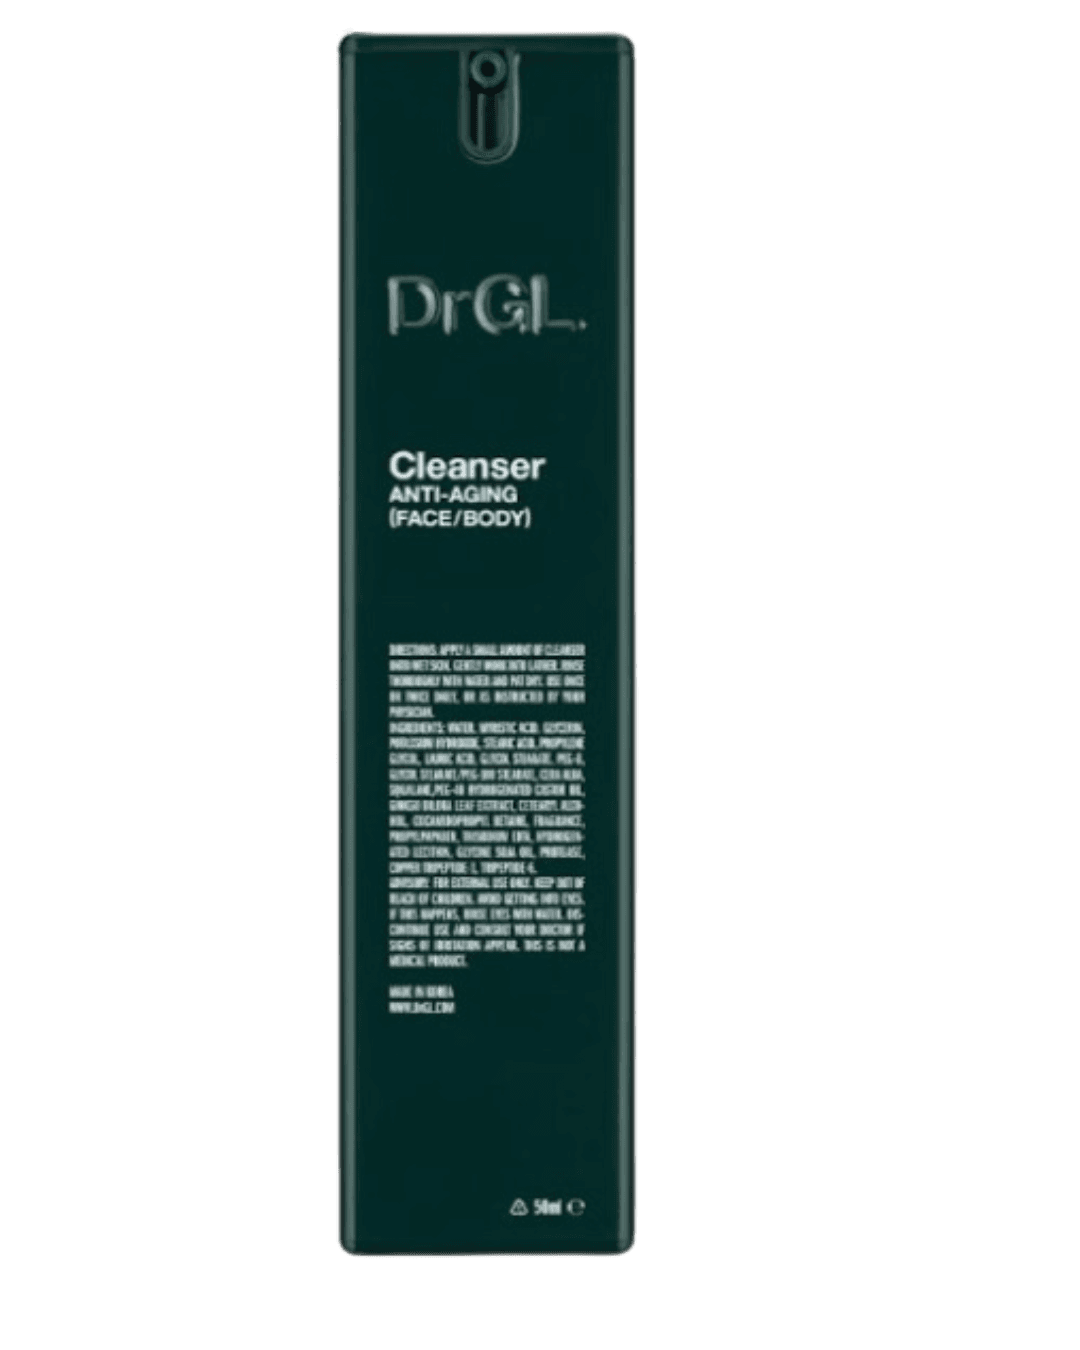 DrGL Cleanser Anti-Aging